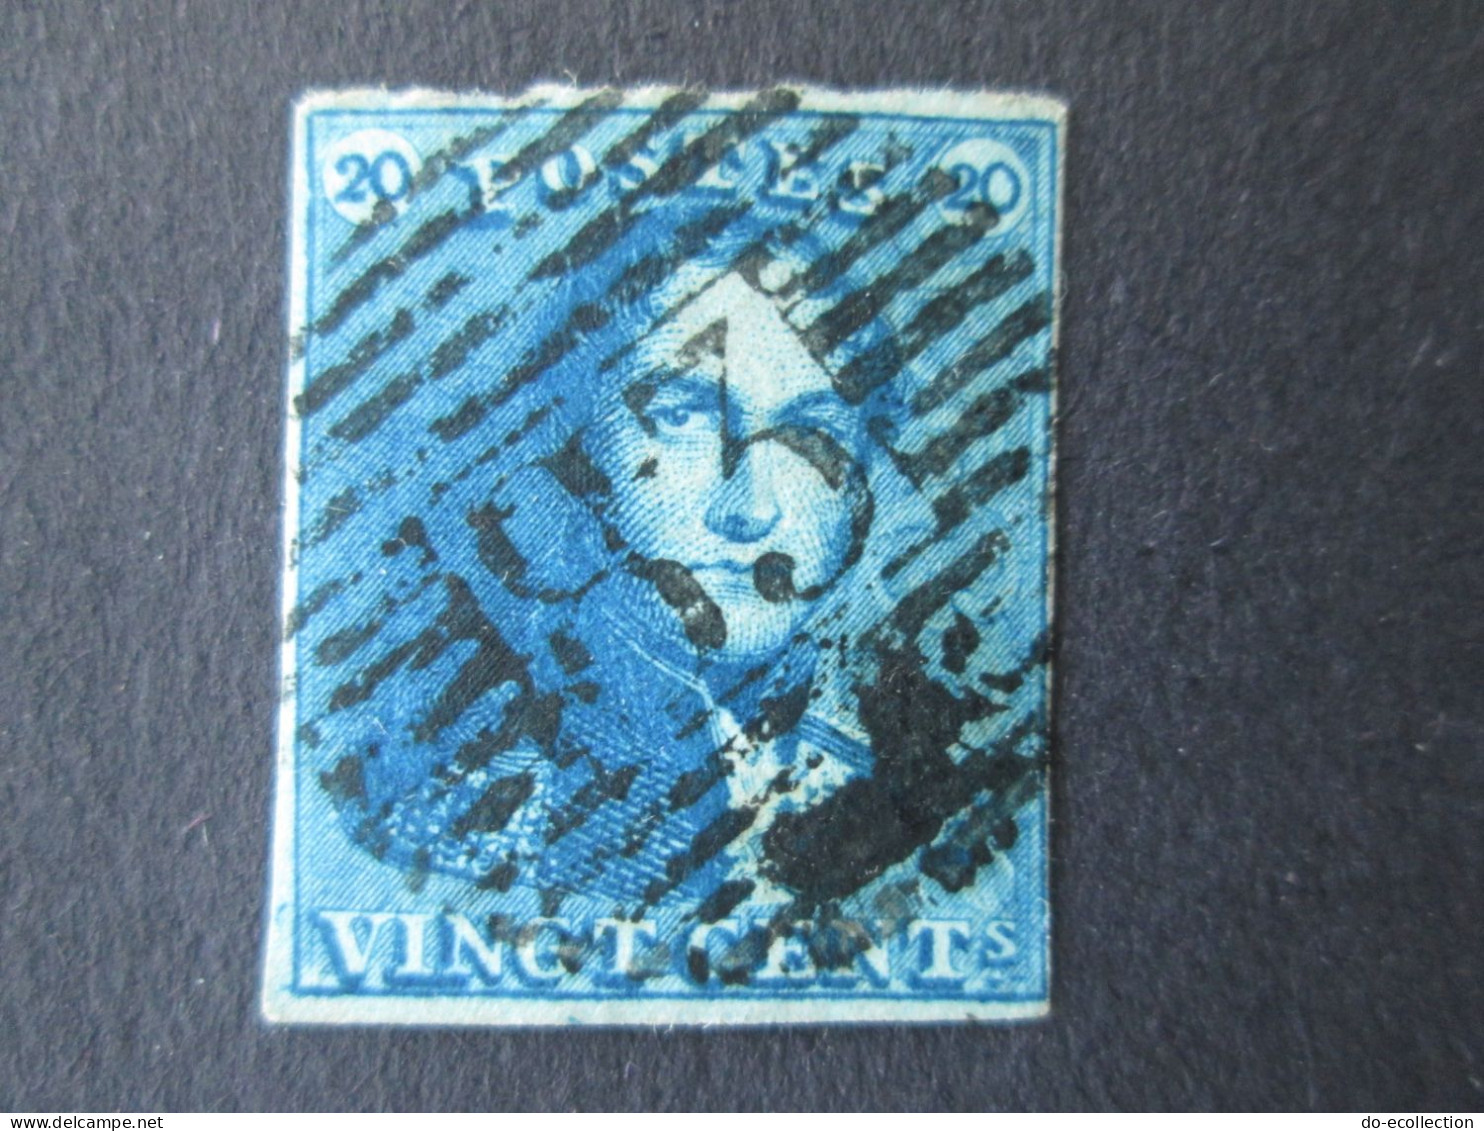 BELGIQUE lot de 4 timbres 1849 dont oblitération 33/59/83 Leopold I épaulettes 10c 20c Belgie Belgium timbre stamps